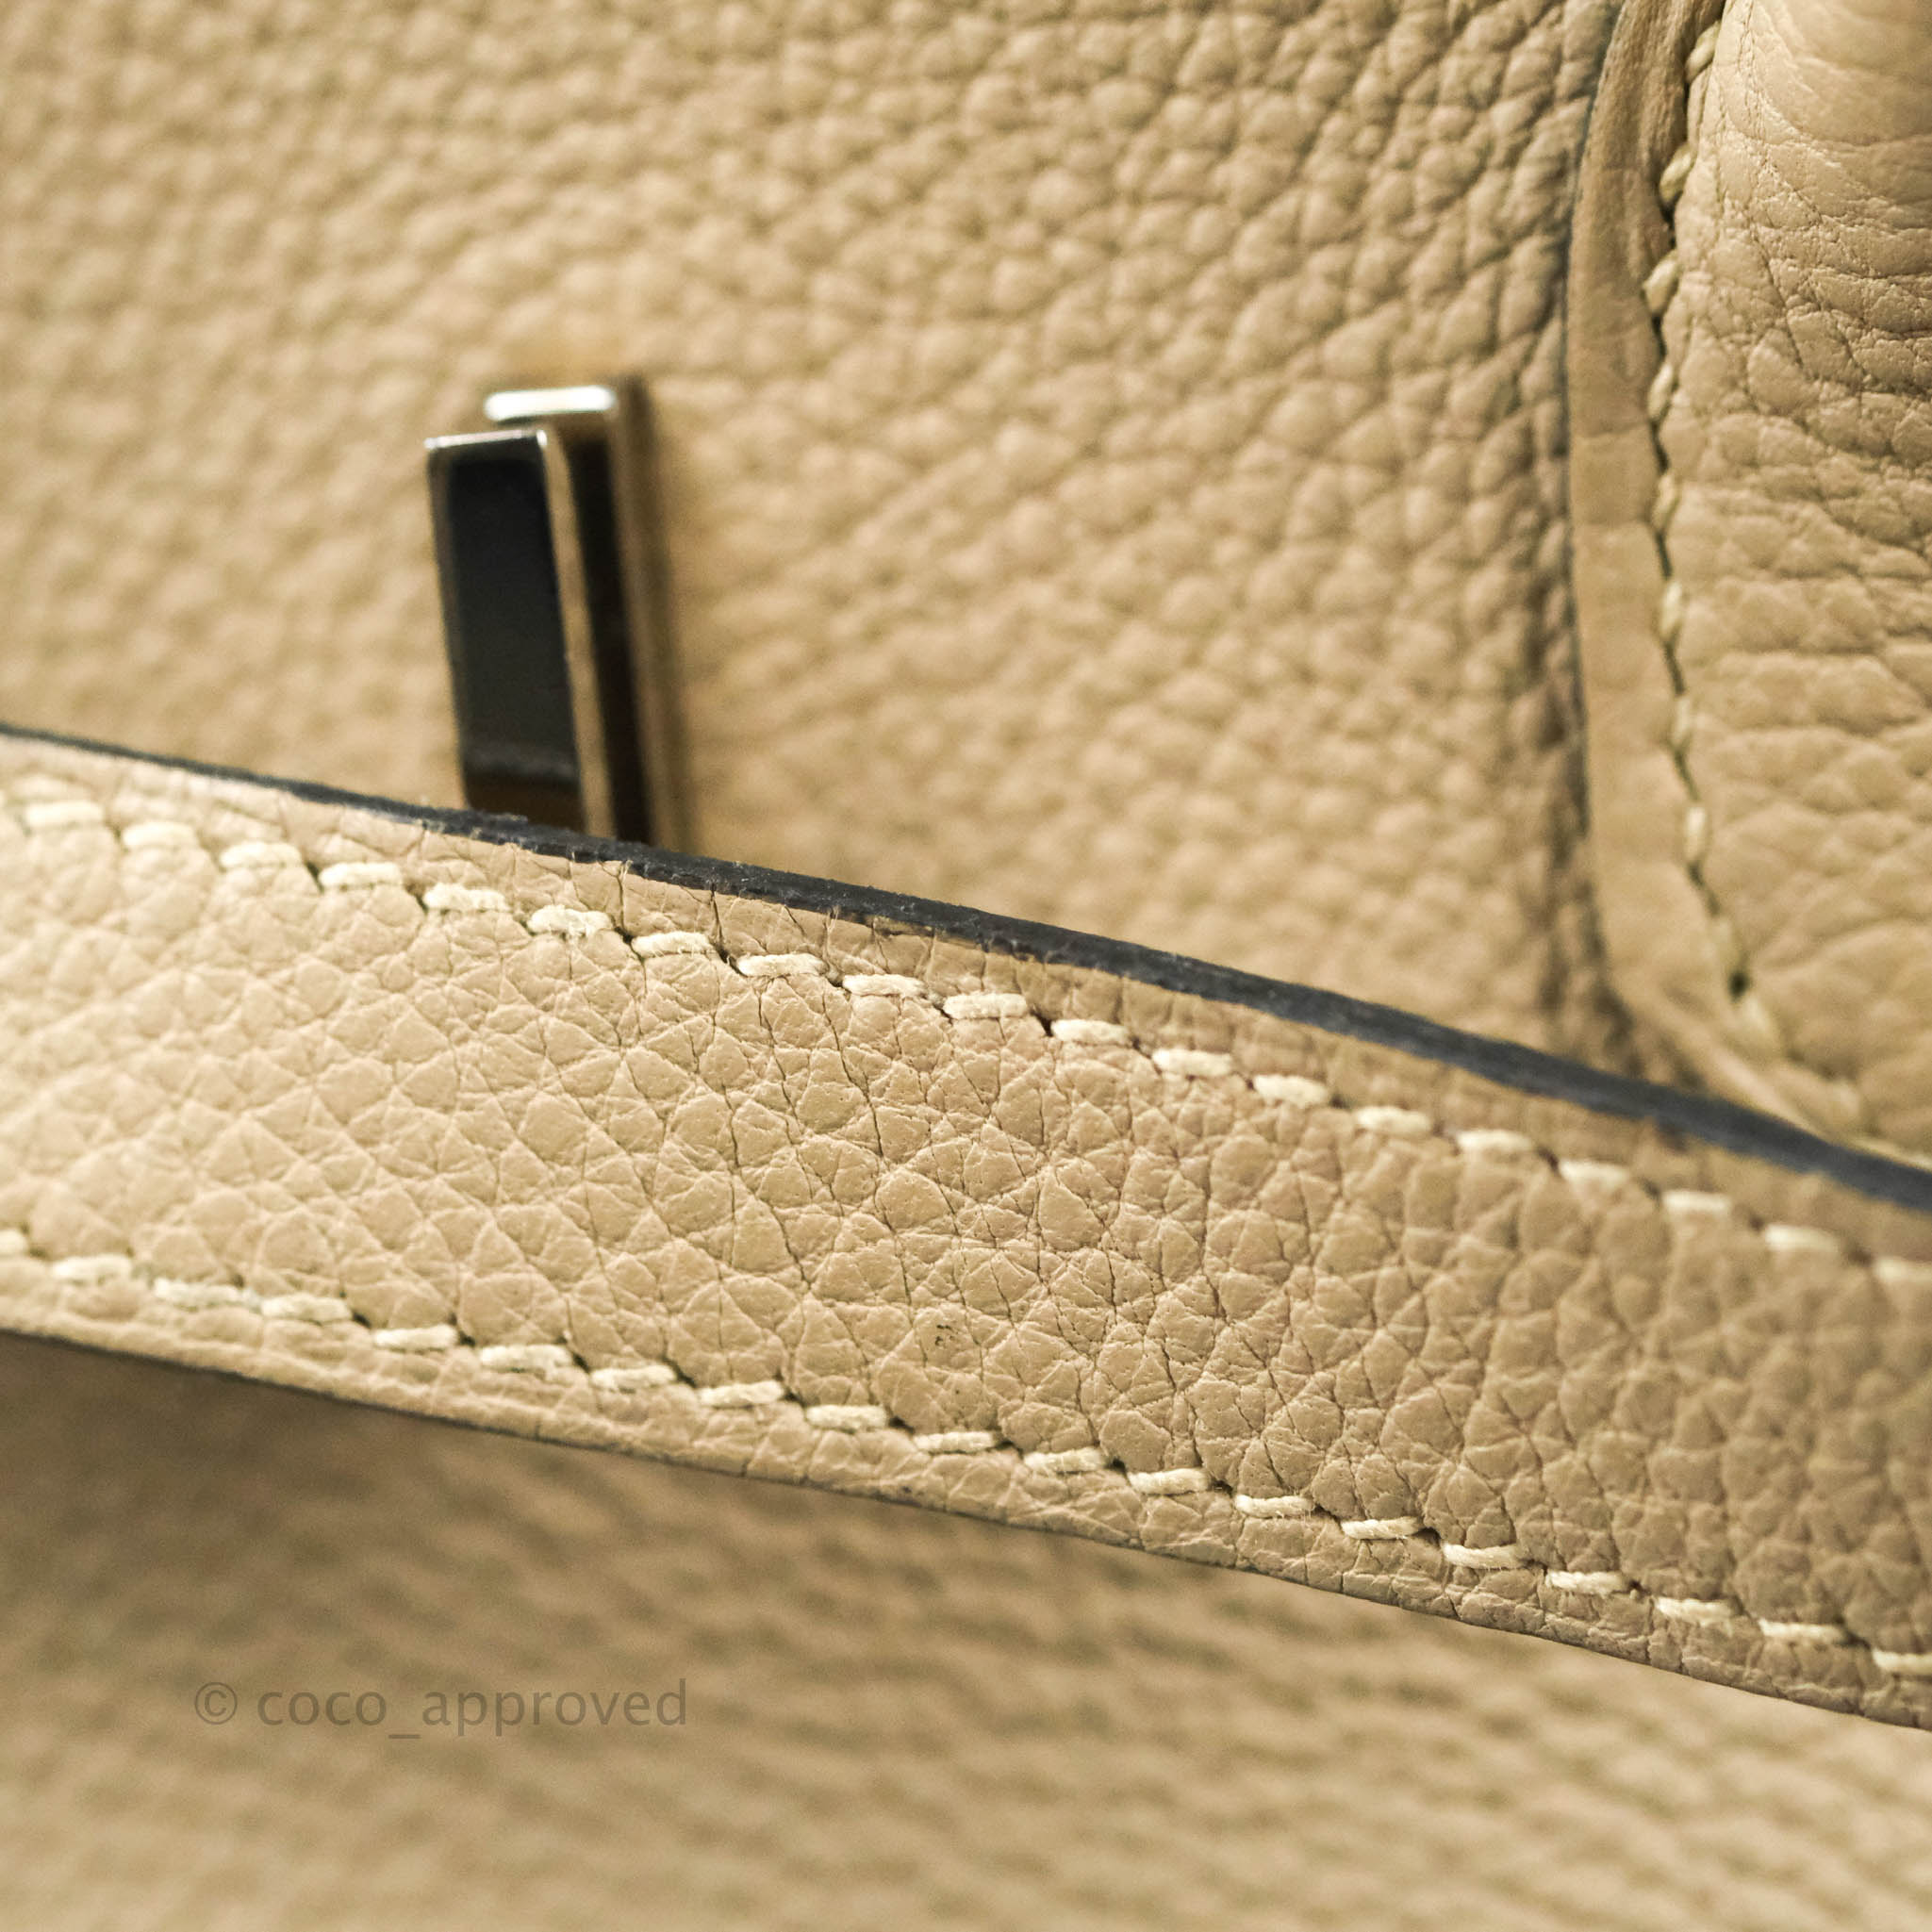 Hermès Gris Tourterelle Birkin 35cm with Palladium Hardware, Handbags and  Accessories Online, Ecommerce Retail